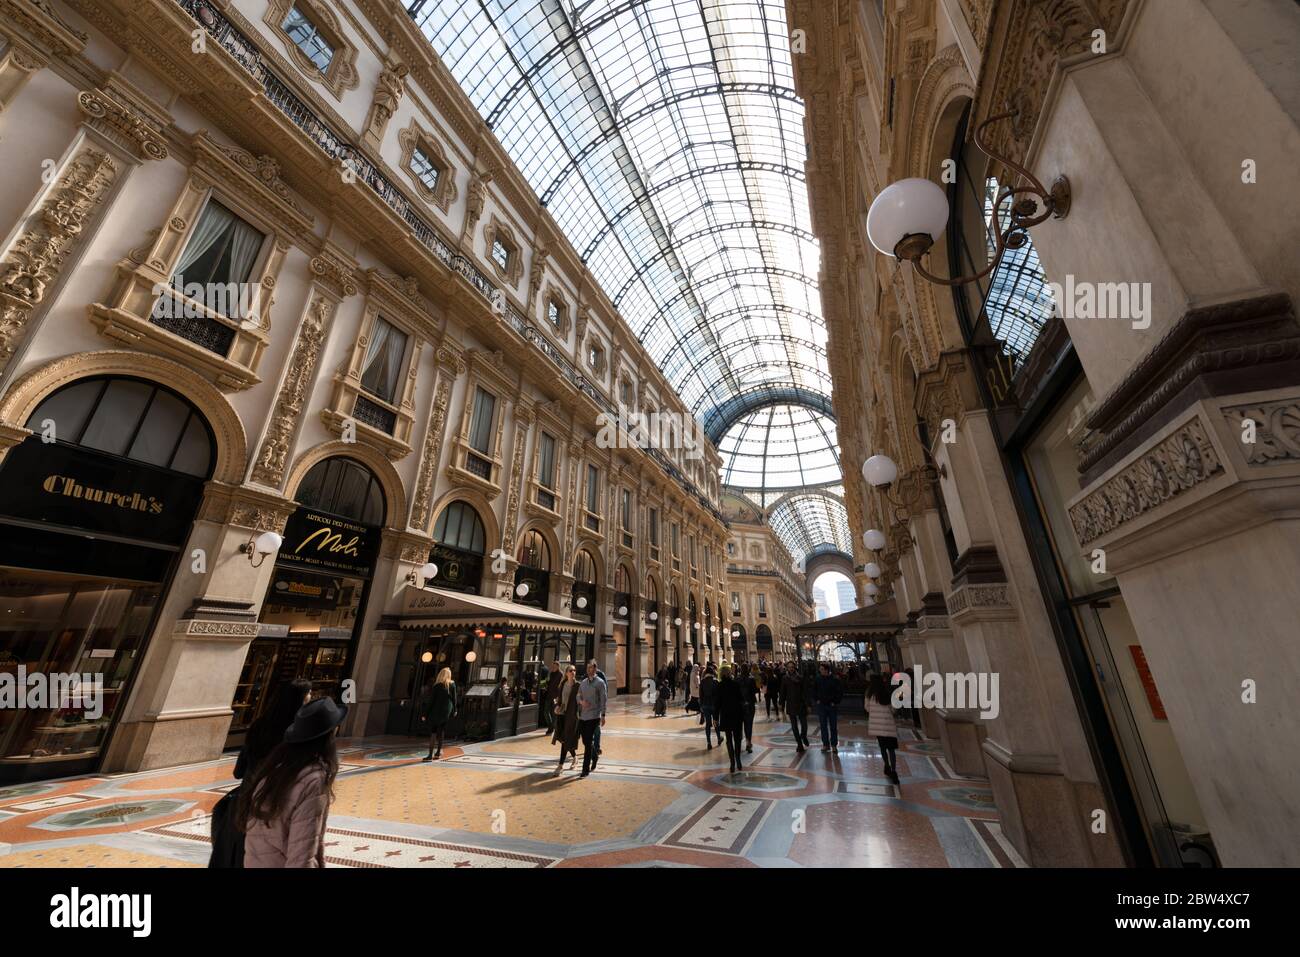 MILÁN, ITALIA - 16, MARZO de 2018: Imagen horizontal del interior de la Galería Vittorio Emanuele II, un antiguo centro comercial en Milán, Italia Foto de stock